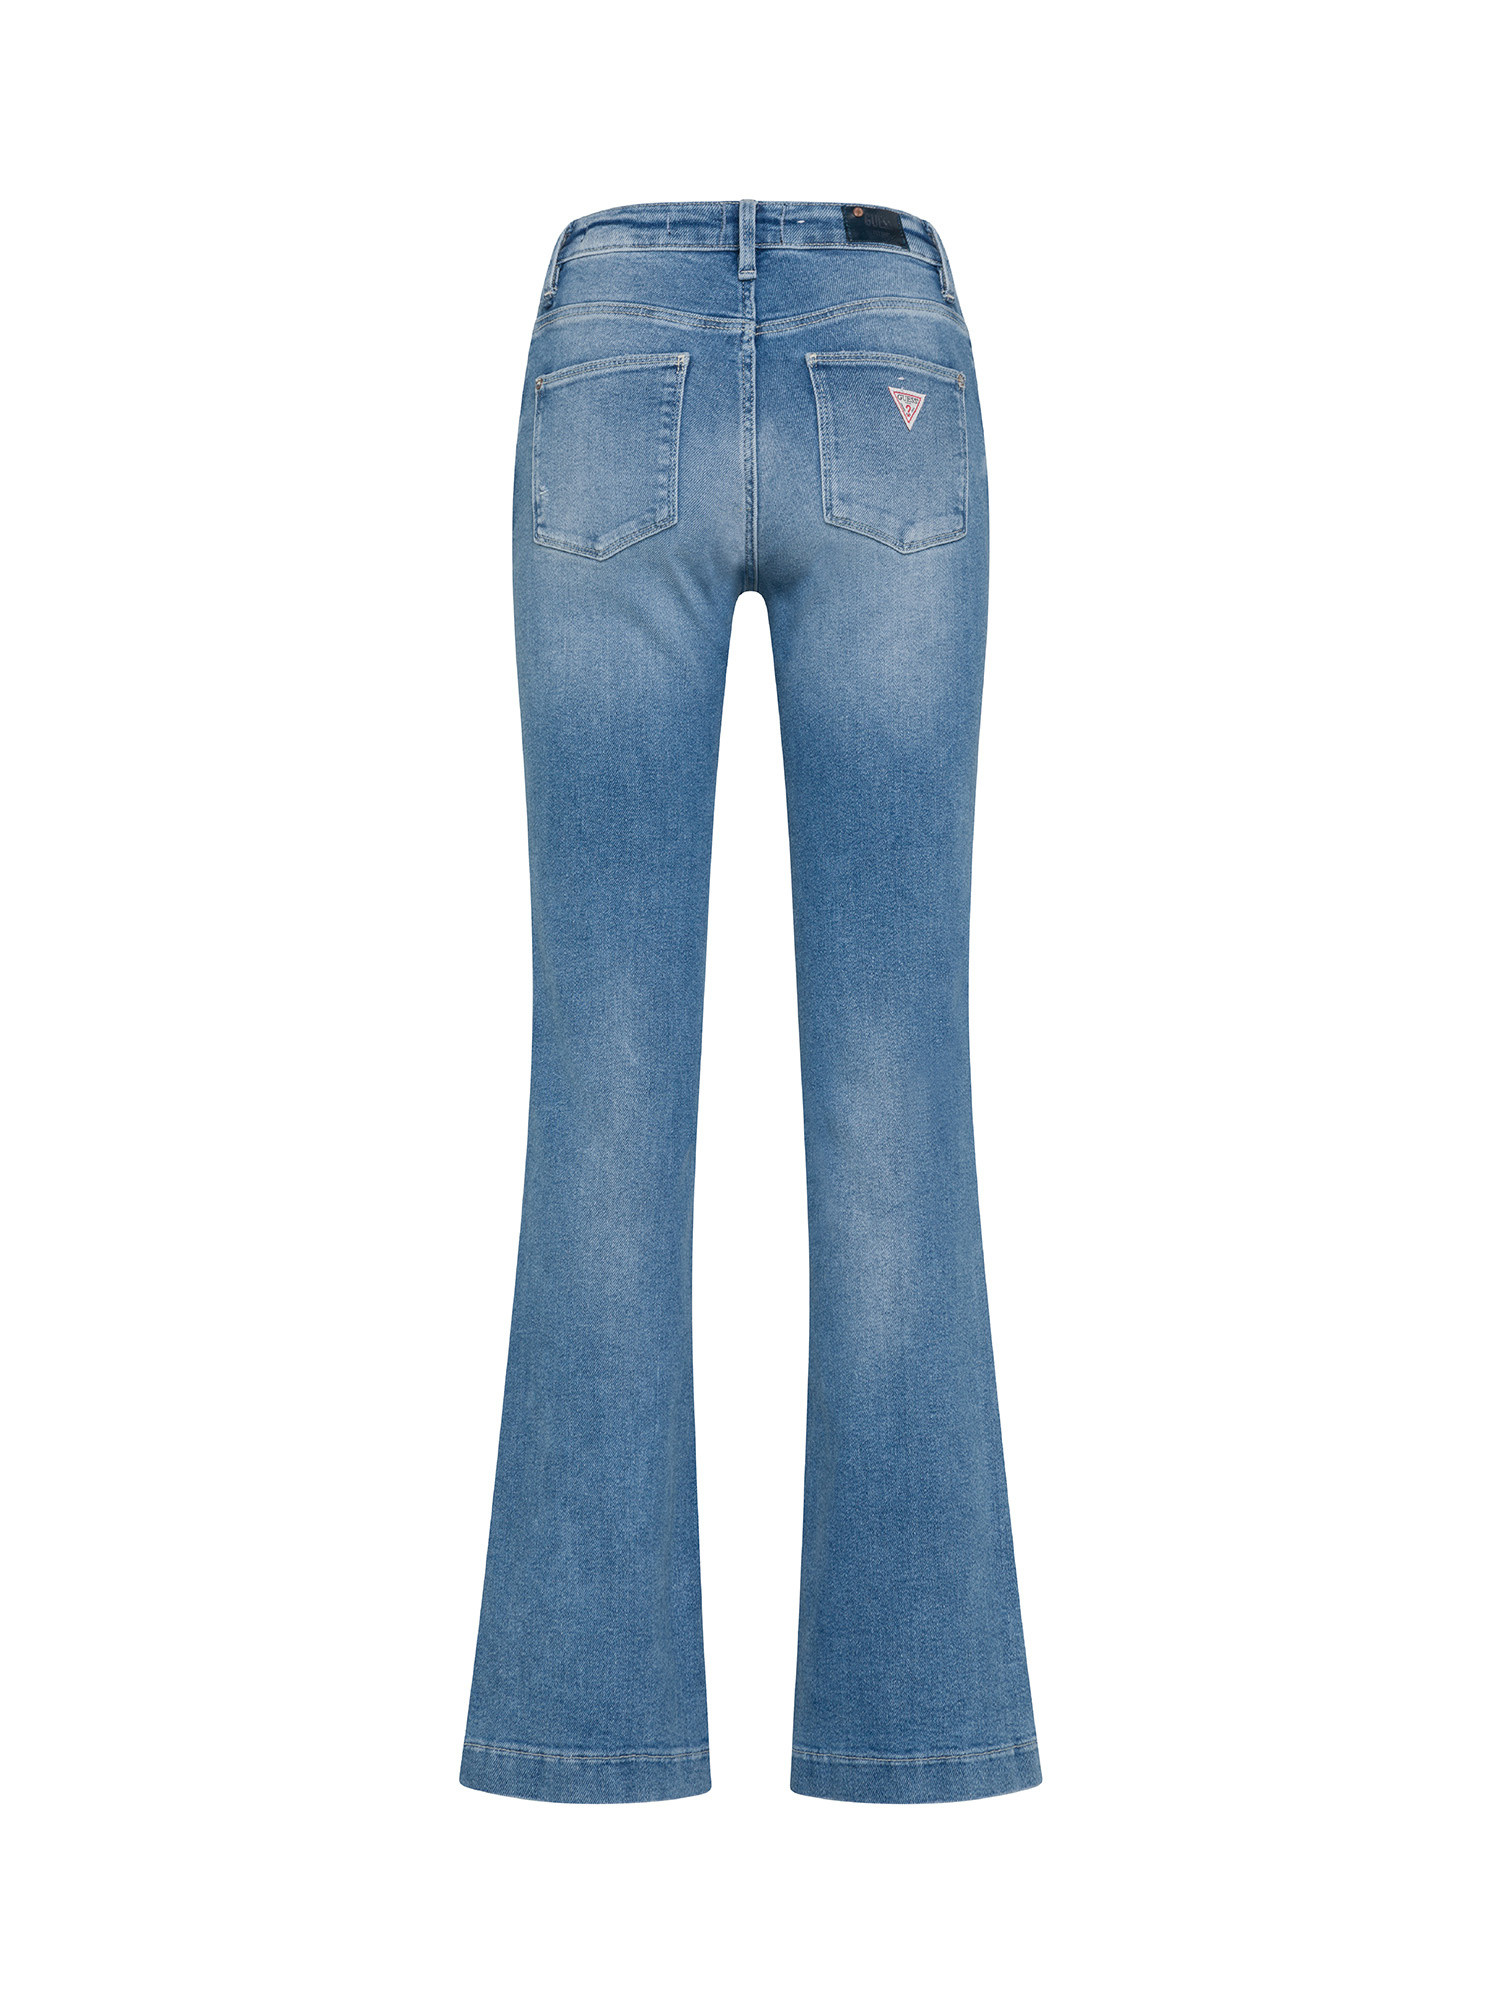 Guess - 5-pocket bootcut jeans, Denim, large image number 1